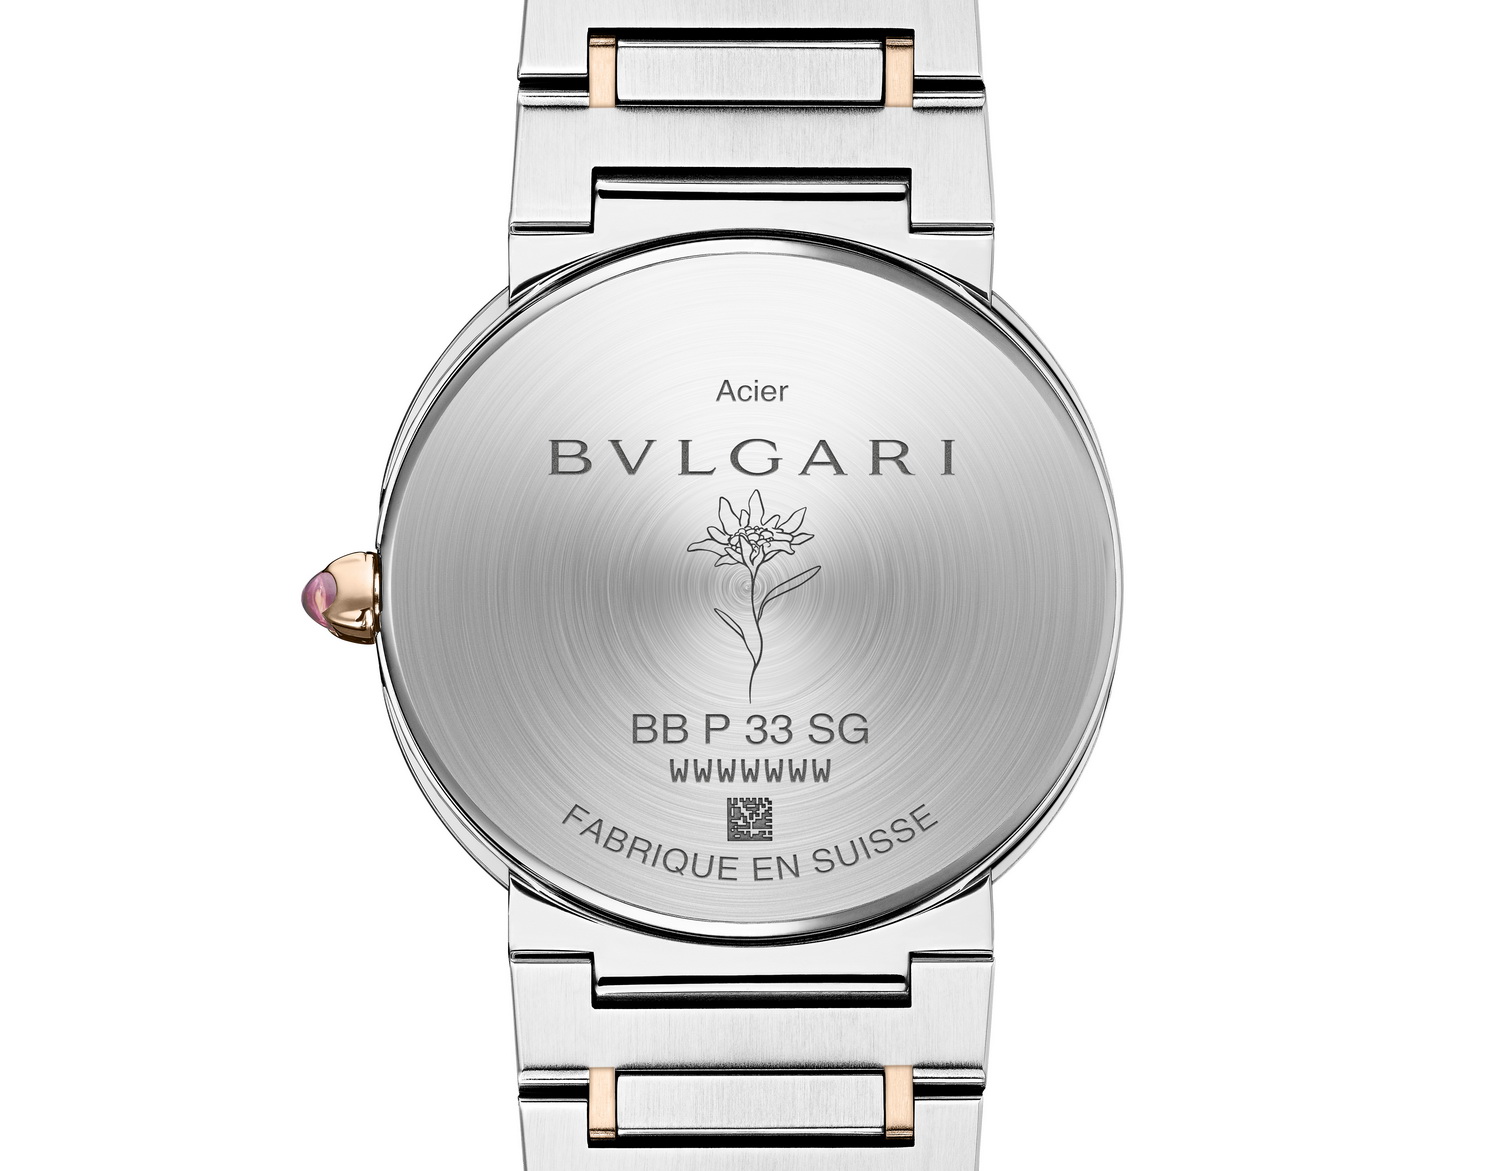 Lisa hợp tác cùng Bvlgari ra mắt bộ sưu tập đồng hồ giới hạn